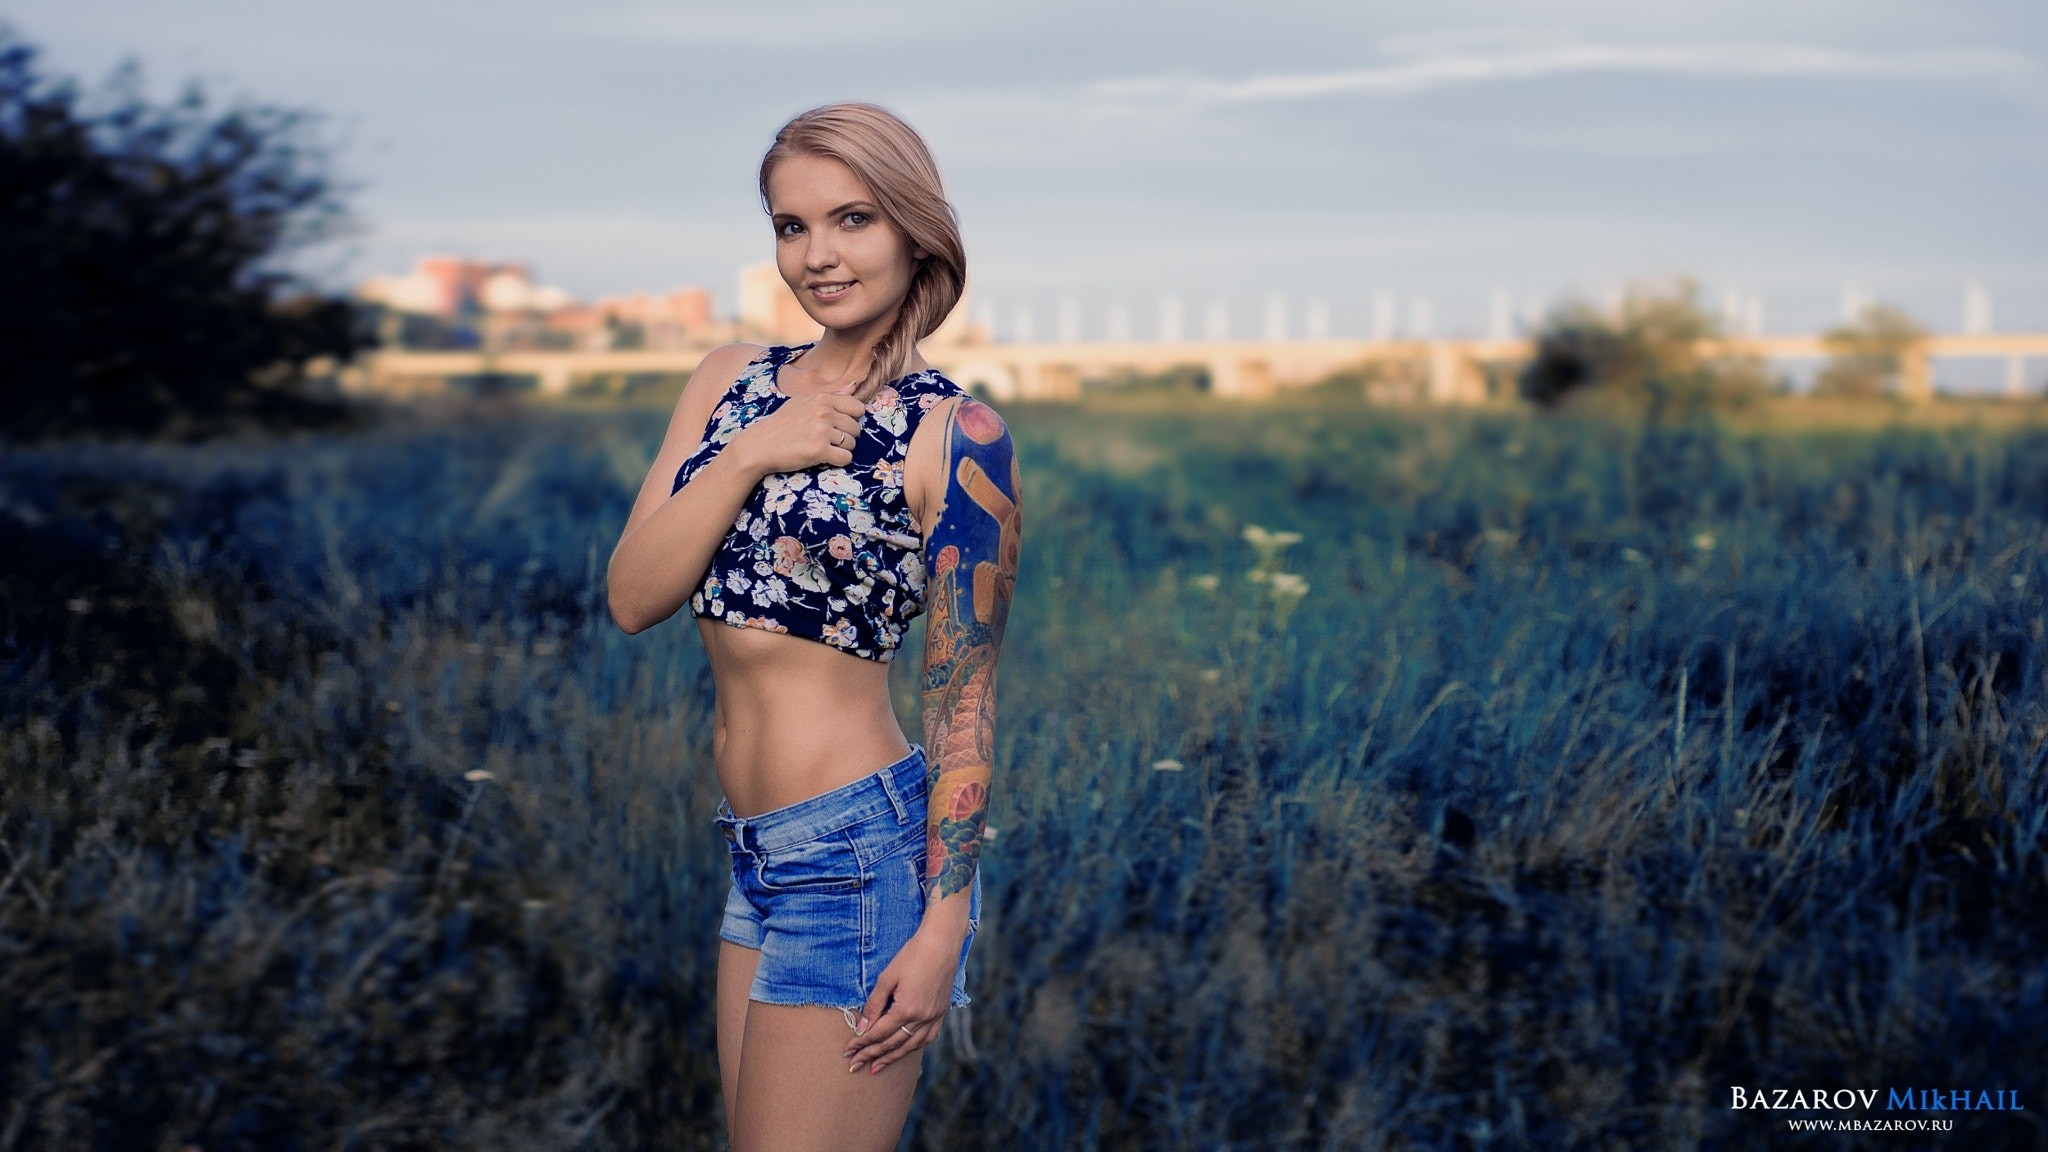 People 2048x1152 women blonde portrait belly jean shorts smiling depth of field brunette tattoo women outdoors Mikhail Bazarov watermarked